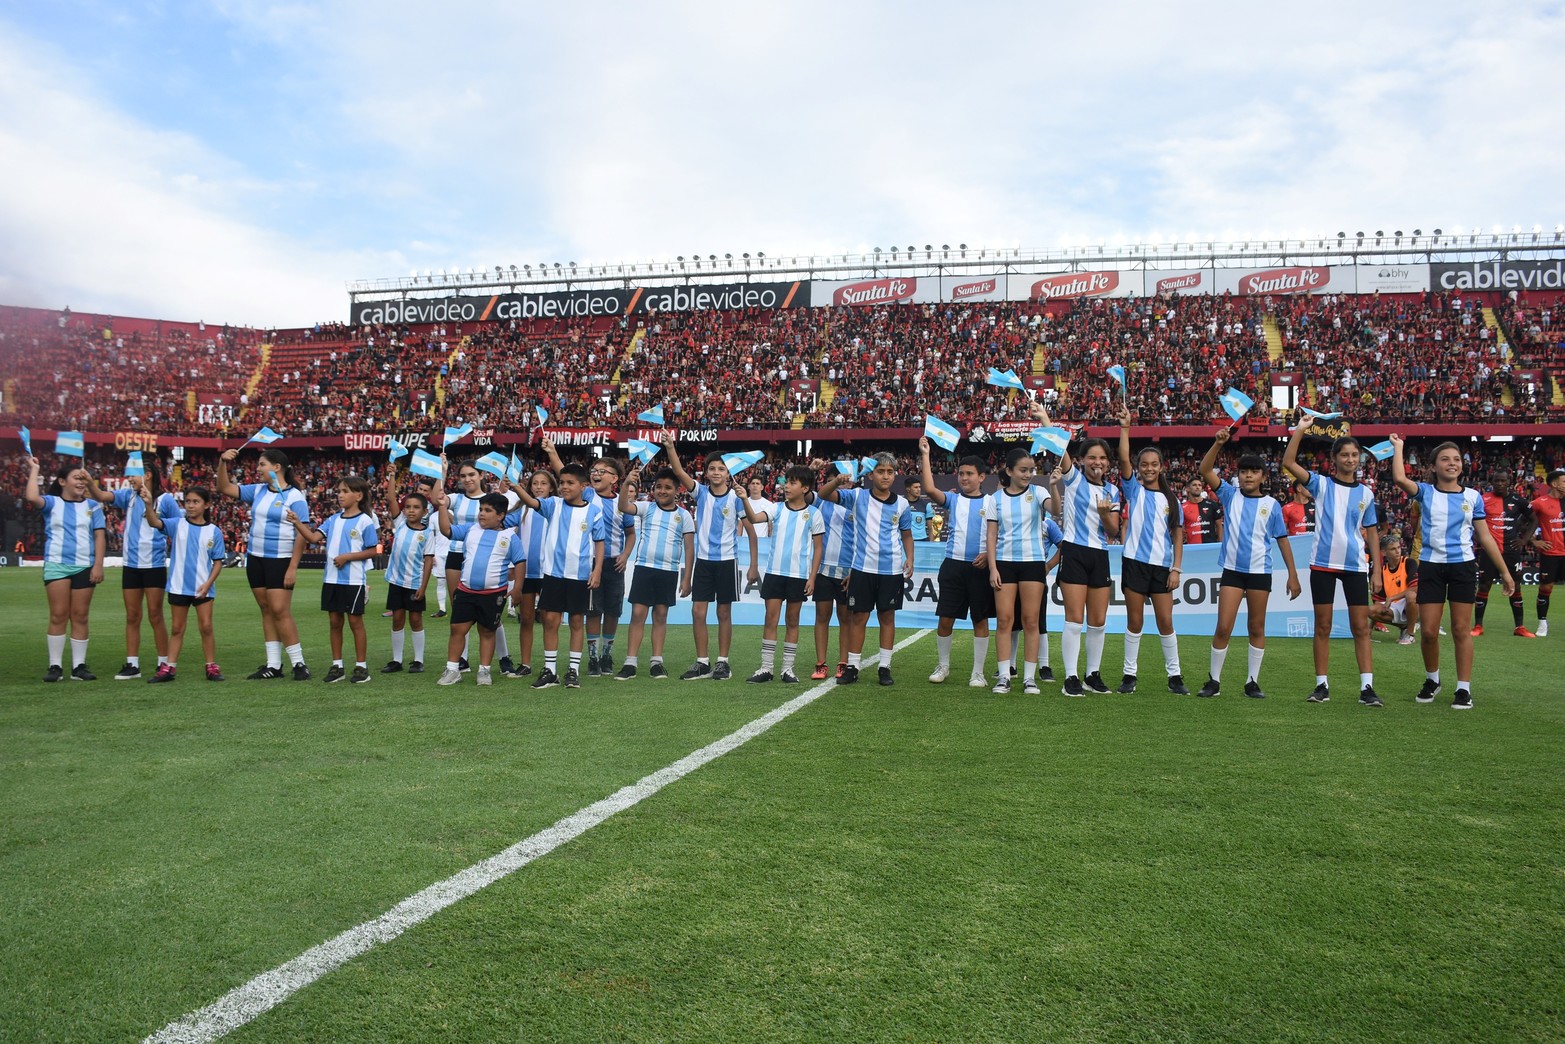 Los jugadores entraron con niños vestidos con la camiseta de la selección Argentina.